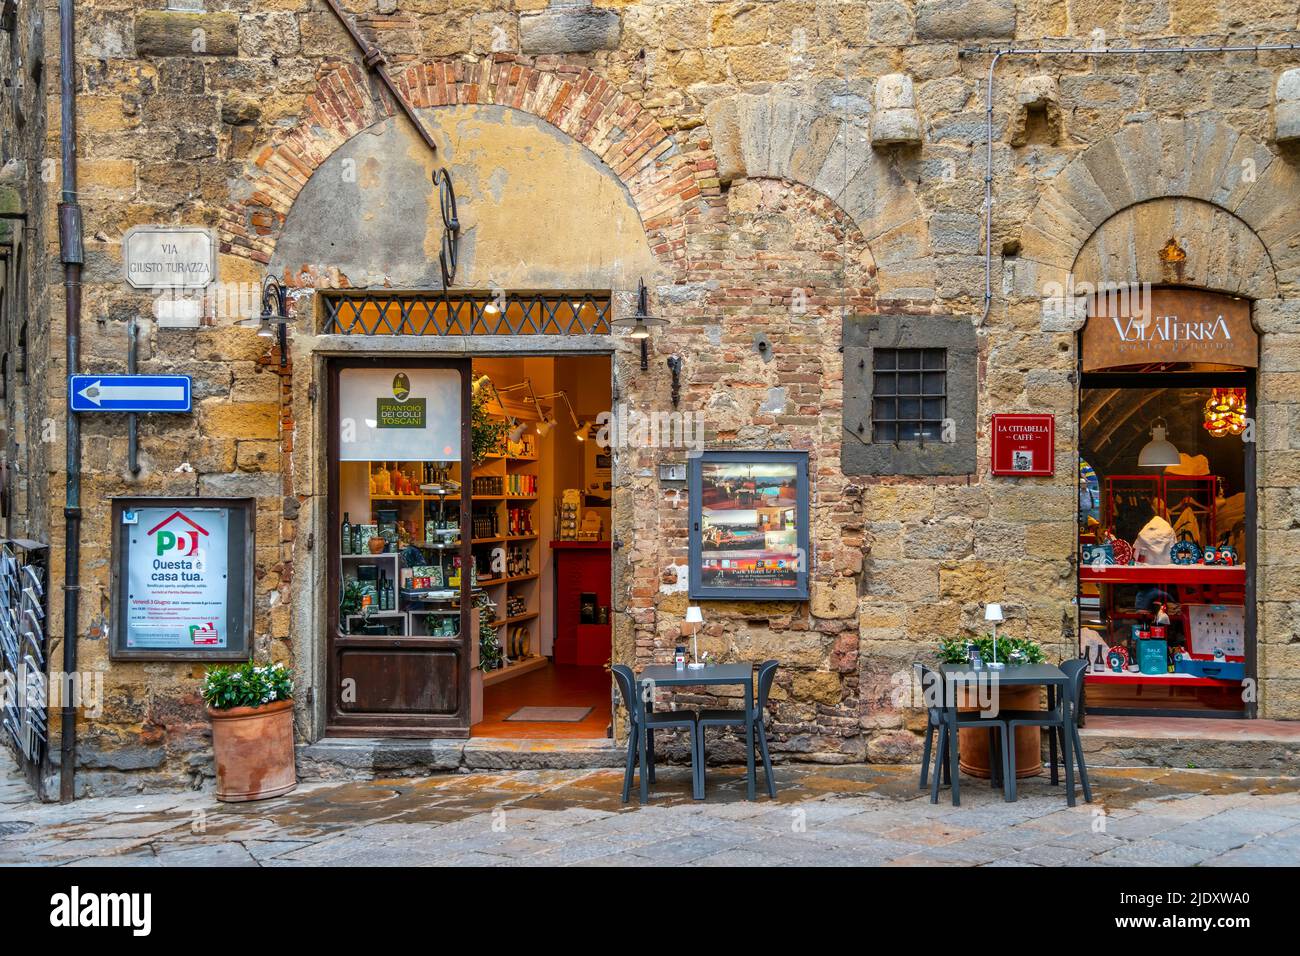 Un café pittoresque avec des tables sur le trottoir en face dans le centre médiéval de la ville historique de Volterra, en Italie, dans la région toscane. Banque D'Images